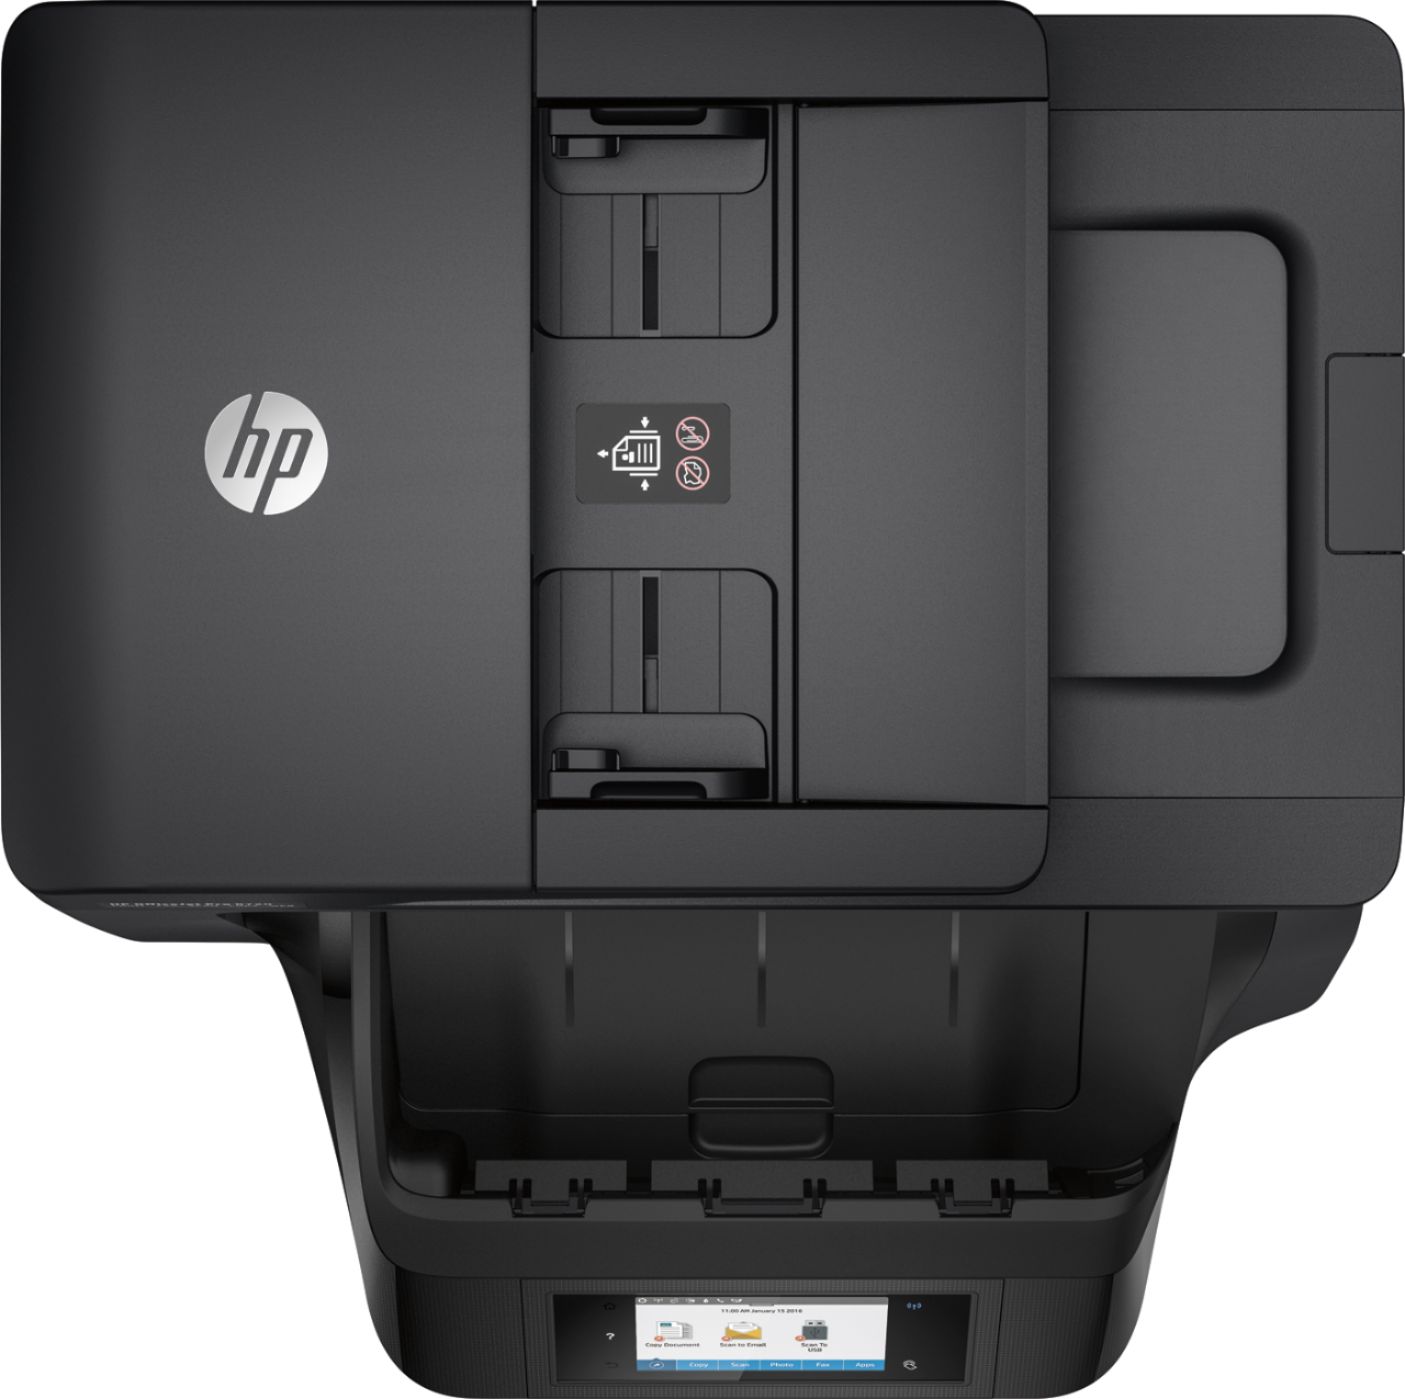 HP Officejet Pro 8720